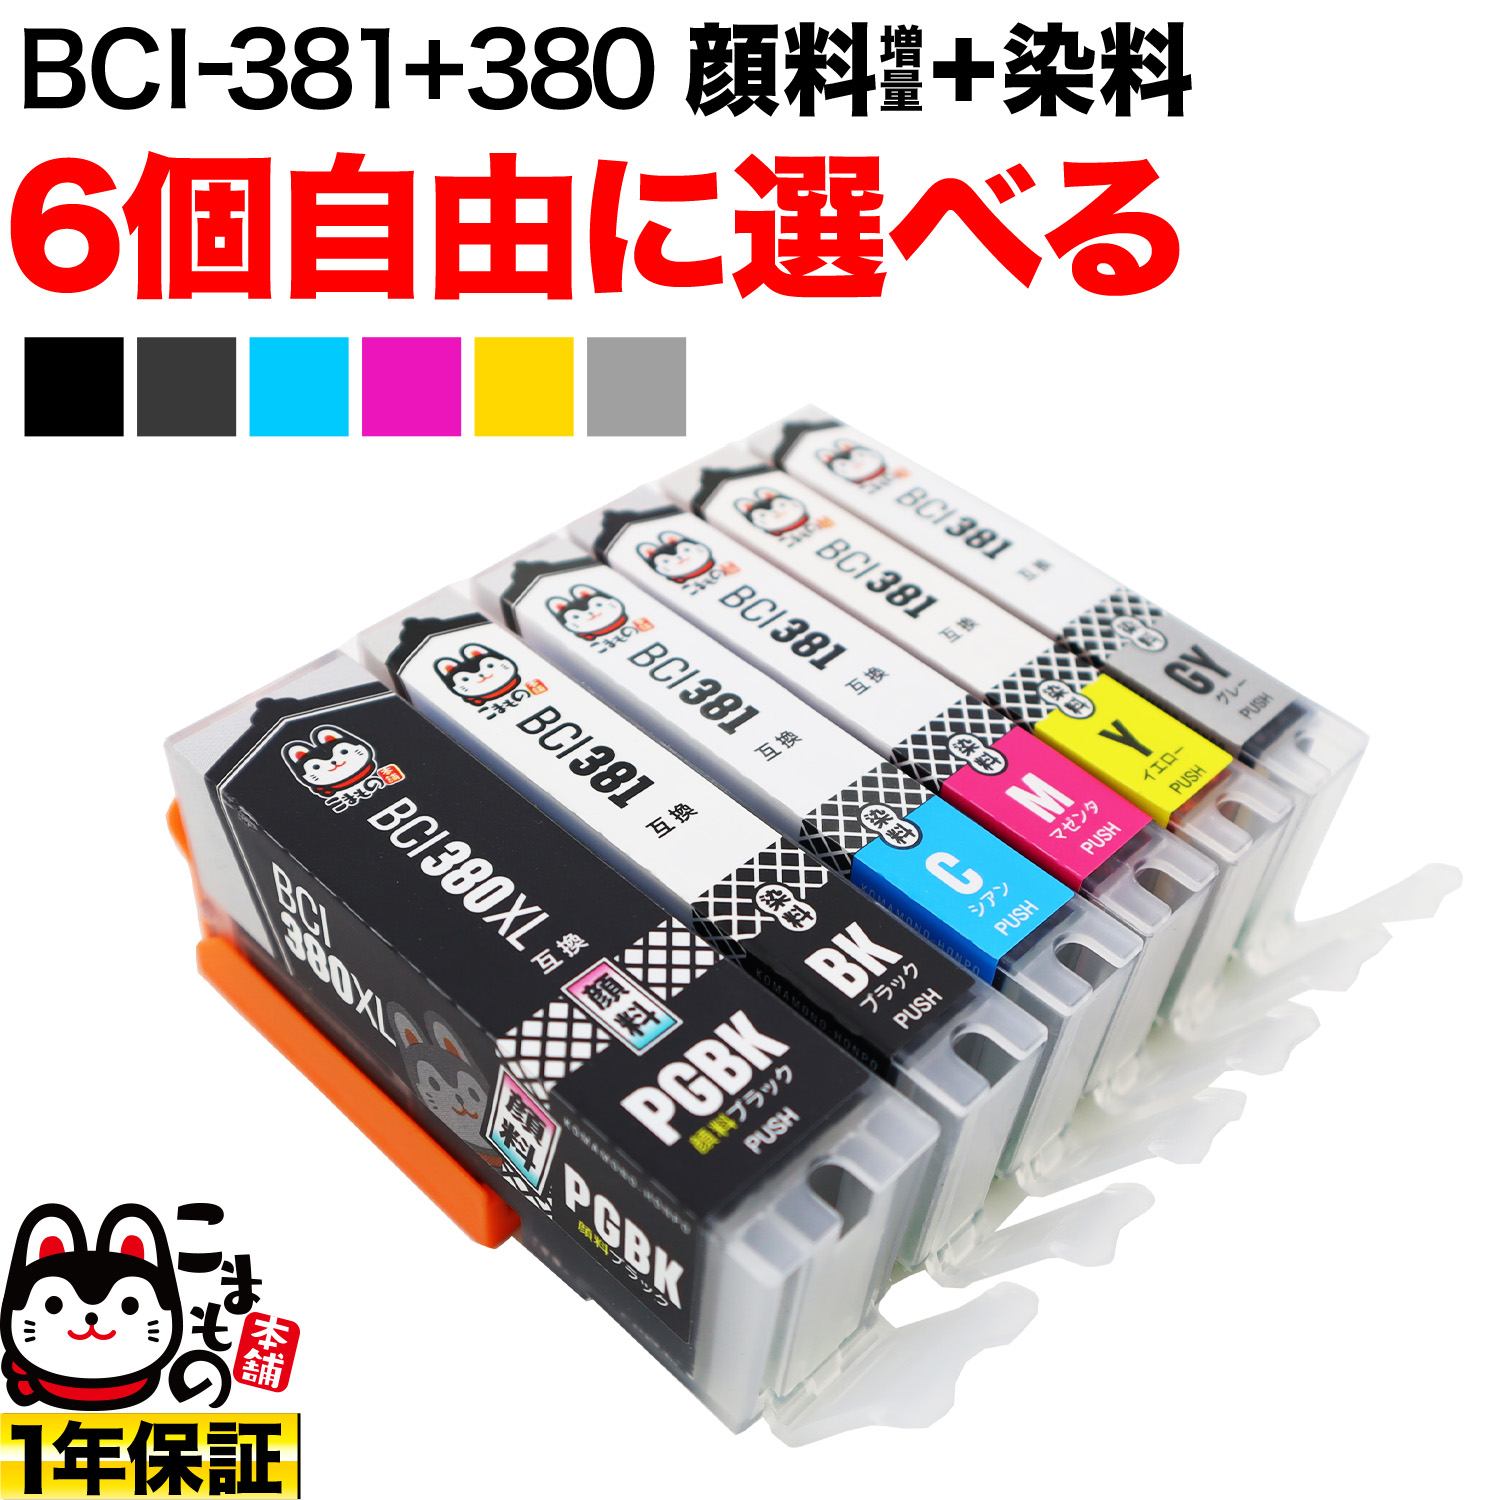 BCI-381+380 キヤノン用 互換インク 自由選択6個セット フリーチョイス